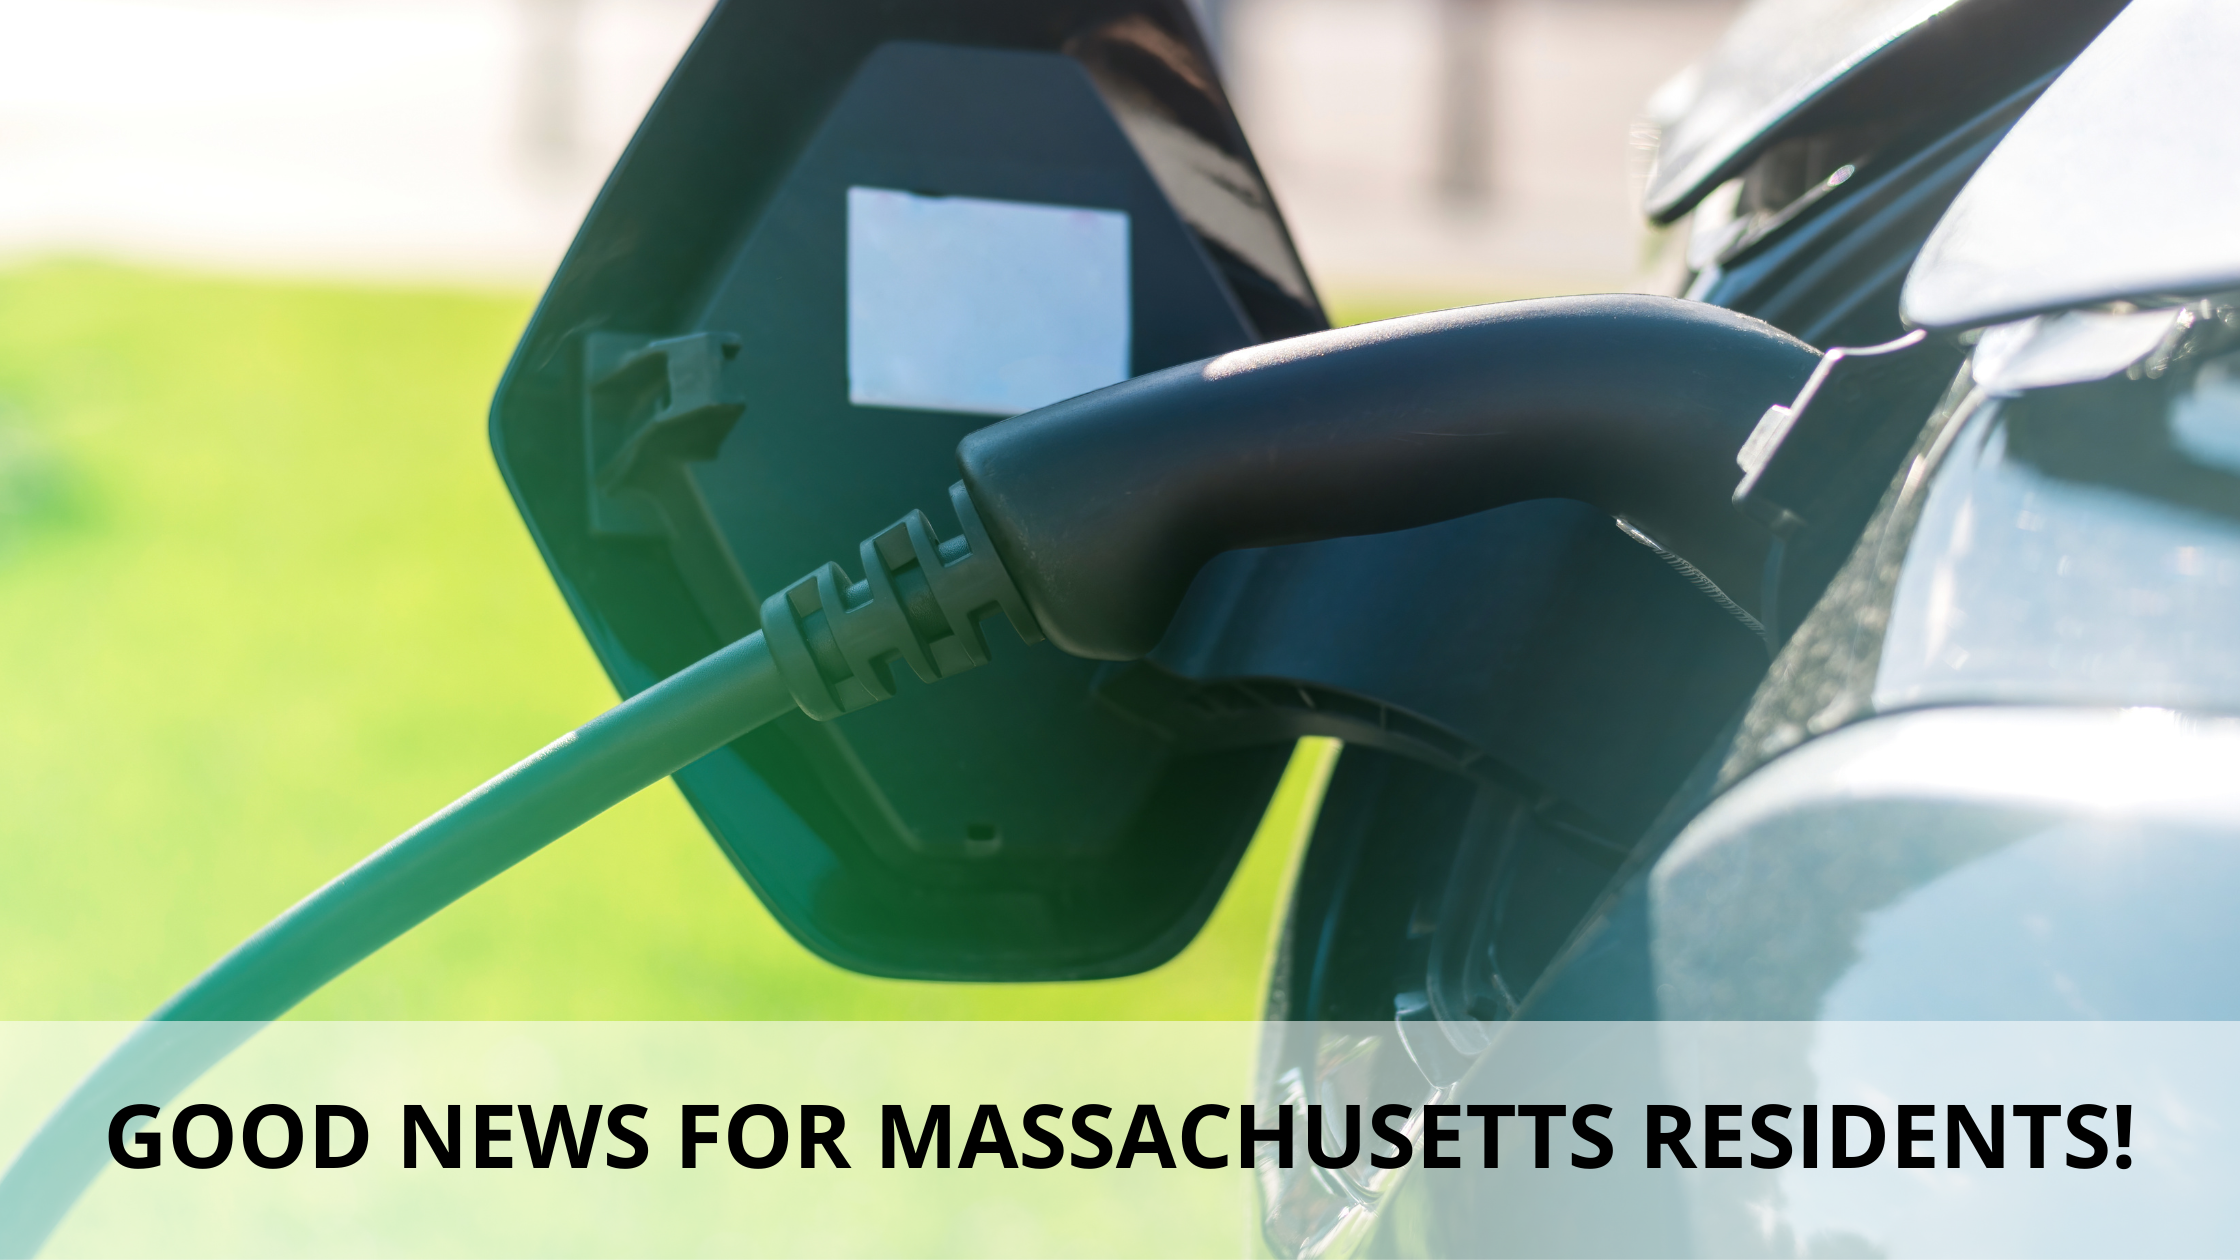 Good news for Massachusetts residents!